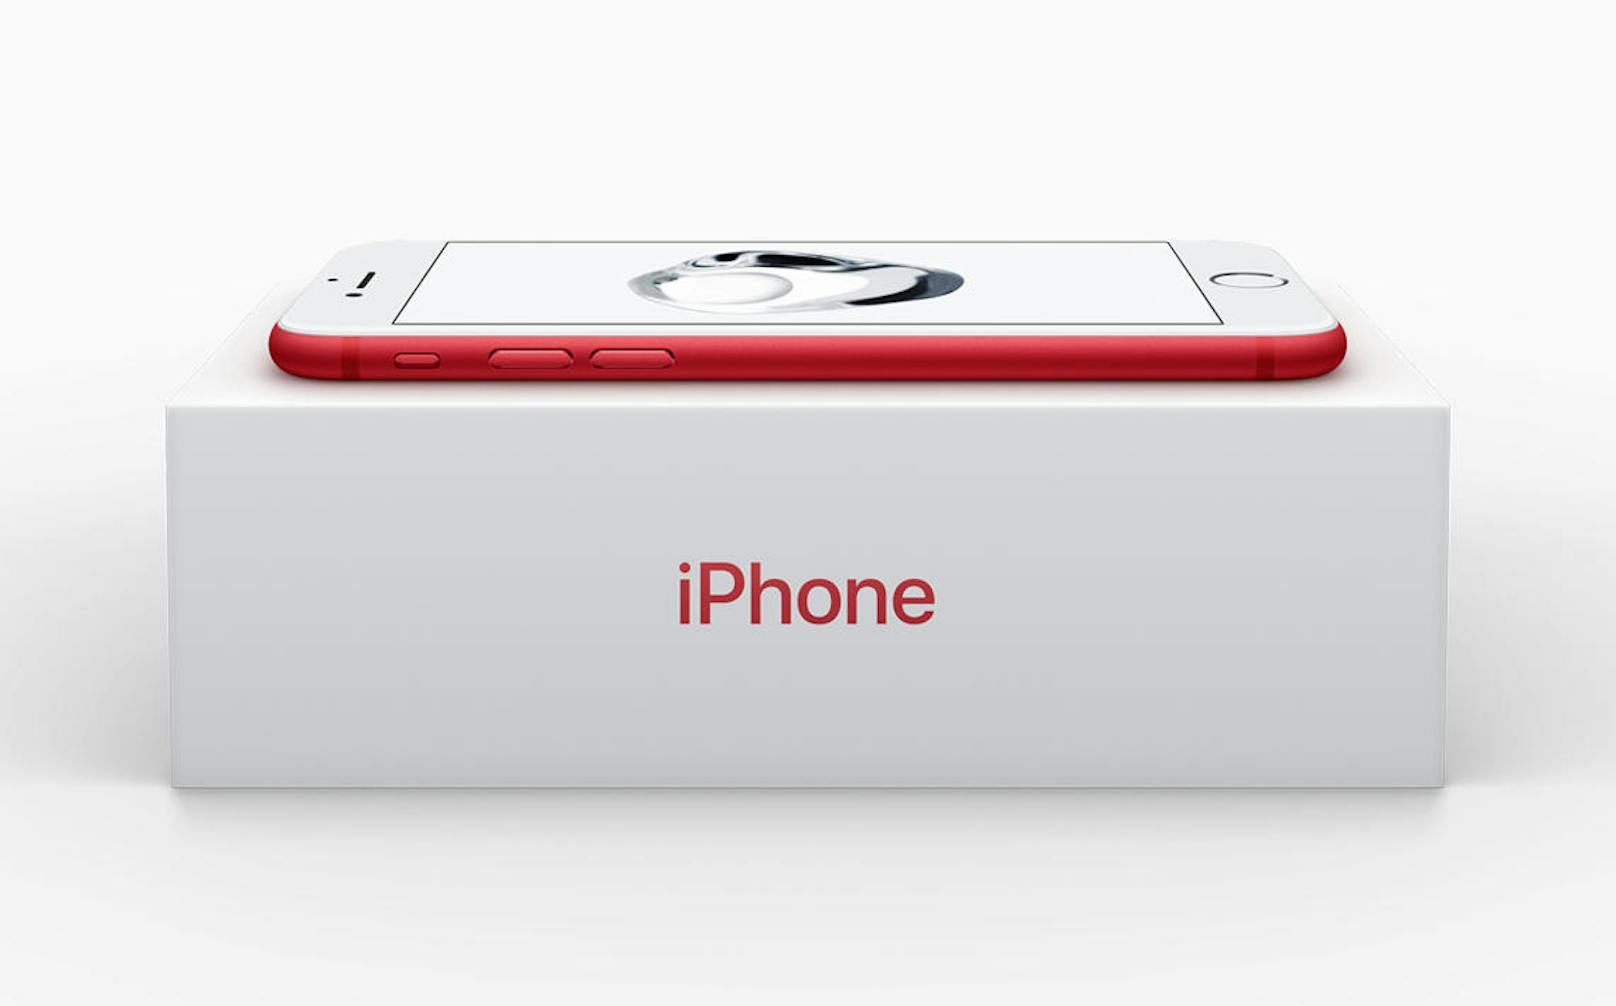 Die Special Edition in Rot gibt es nur in Speichergrößen 128 GB oder 256 GB. Verkaufsstart der roten Variante ist Freitag, 24. März 2017. Die Ergänzung des bestehenden iPhone-Flaggschiffs um neue Optionen ist außerhalb des üblichen Herbst-Zyklus ein ungewöhnlicher Schritt für Apple. Das Display in 4,7 (iPhone 7) oder 5,5 (iPhone 7 Plus) bietet den P3-Farbumfang und die druckempfindliche Technologie 3D Touch. Das Herz stellt der A10 Fusion dar. Die Dualkamera mit Weitwinkel- und Teleobjektiv bleibt dem Plus-Modell vorbehalten.